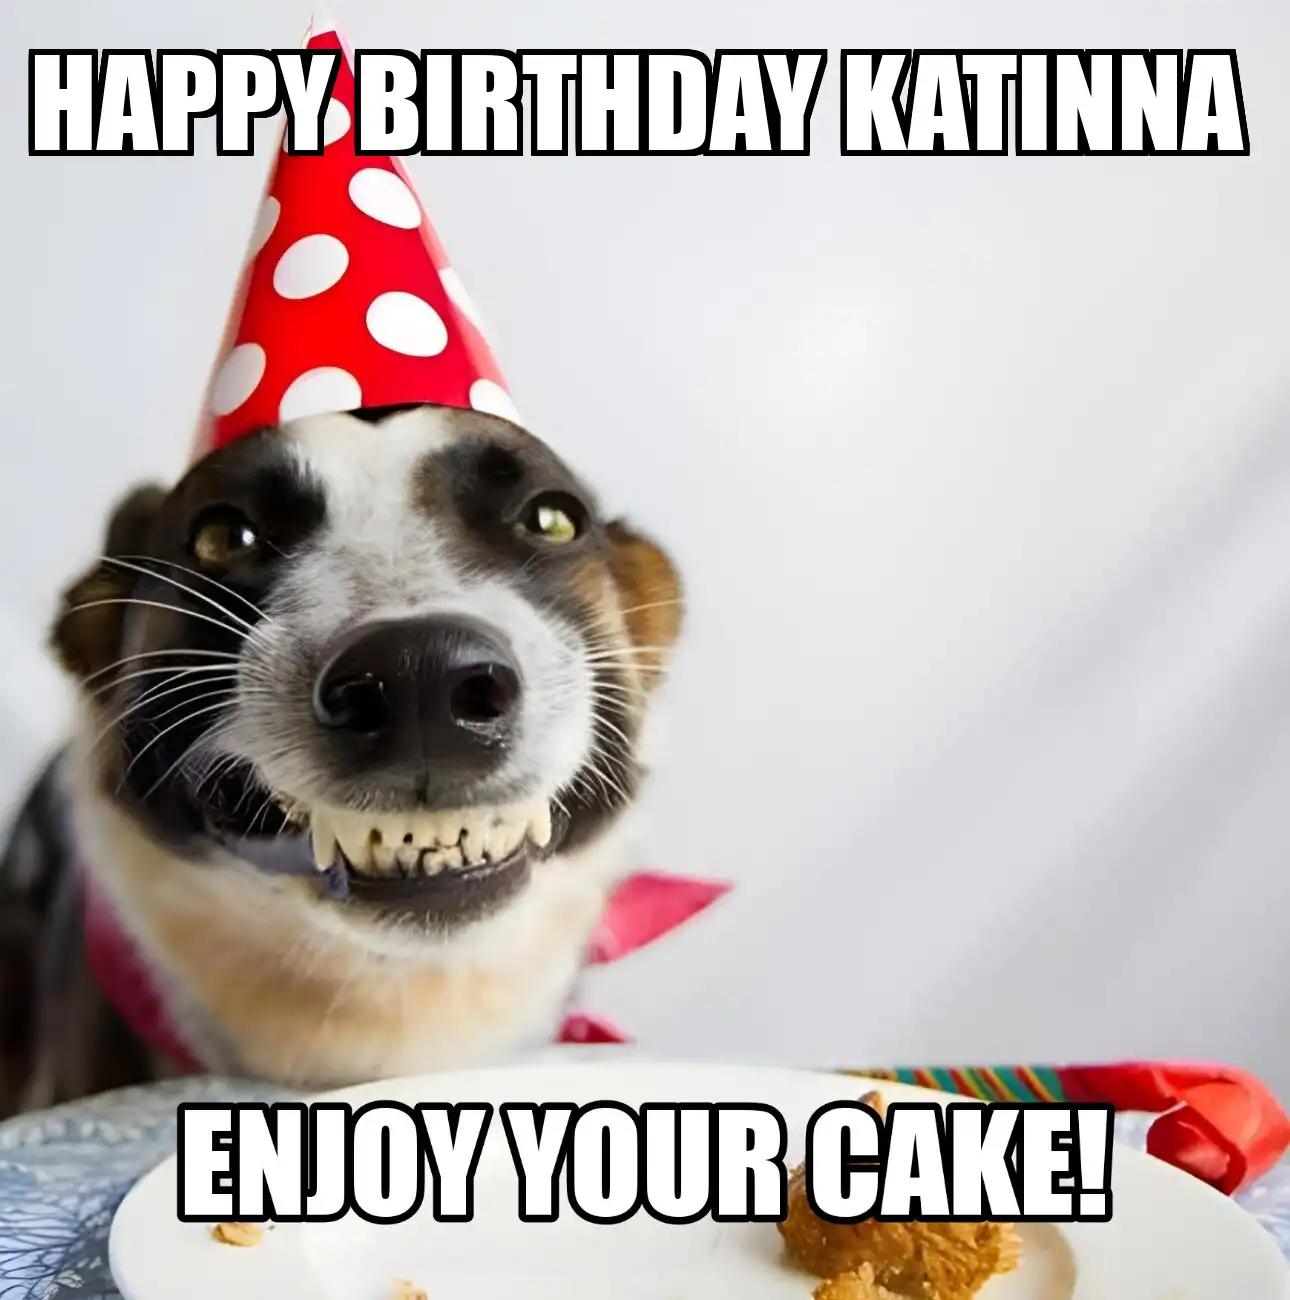 Happy Birthday Katinna Enjoy Your Cake Dog Meme